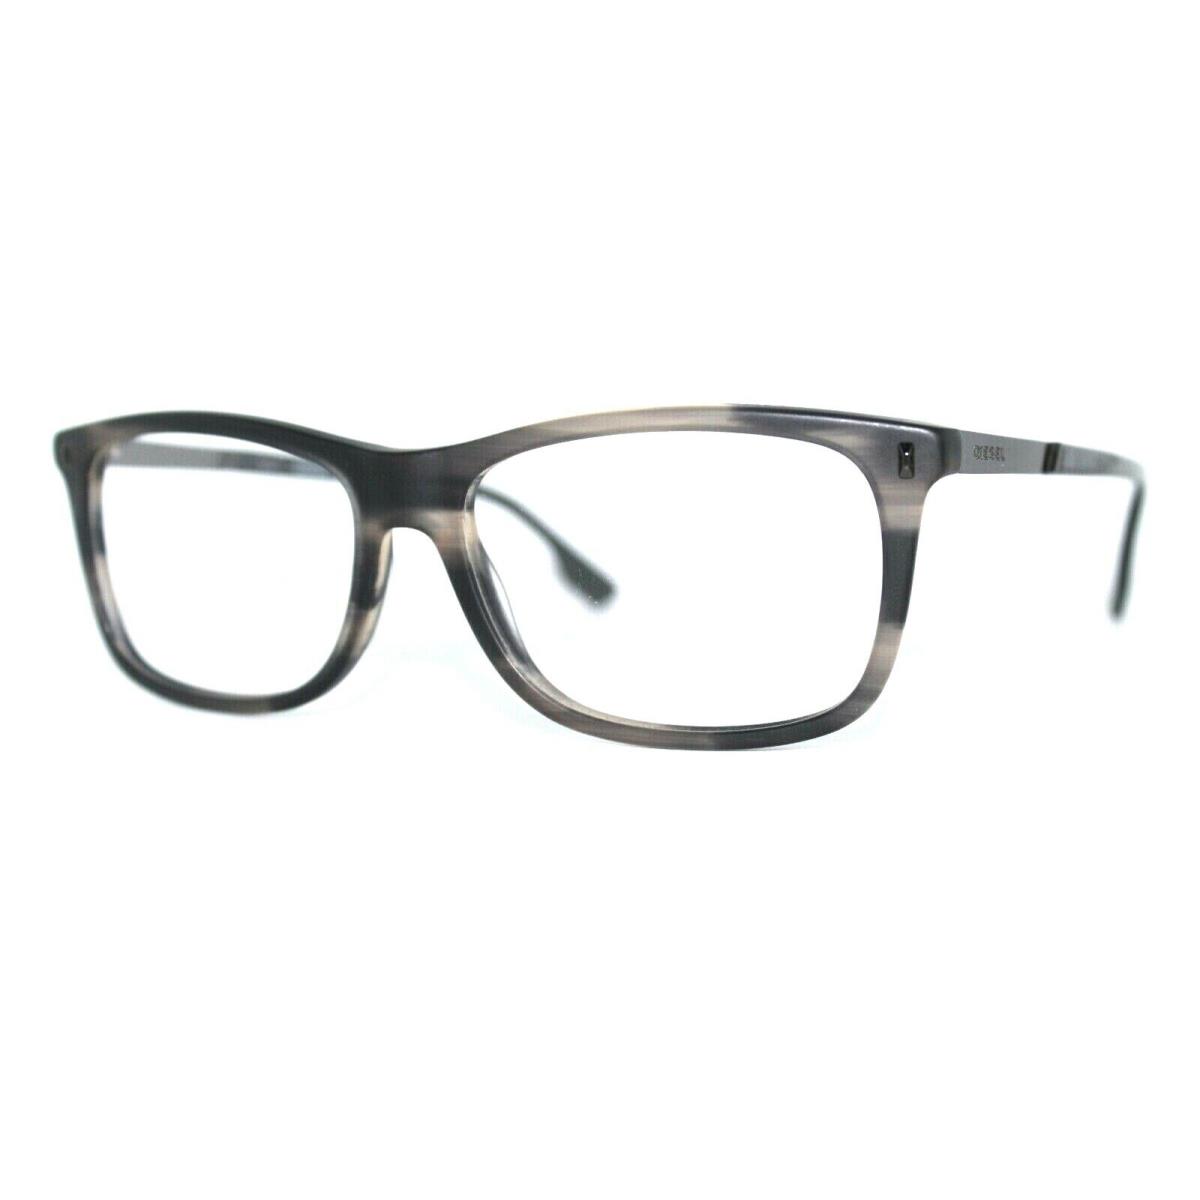 Diesel DL5199 005 Grey Havana Eyeglasses Frames 53-15-145MM W/case